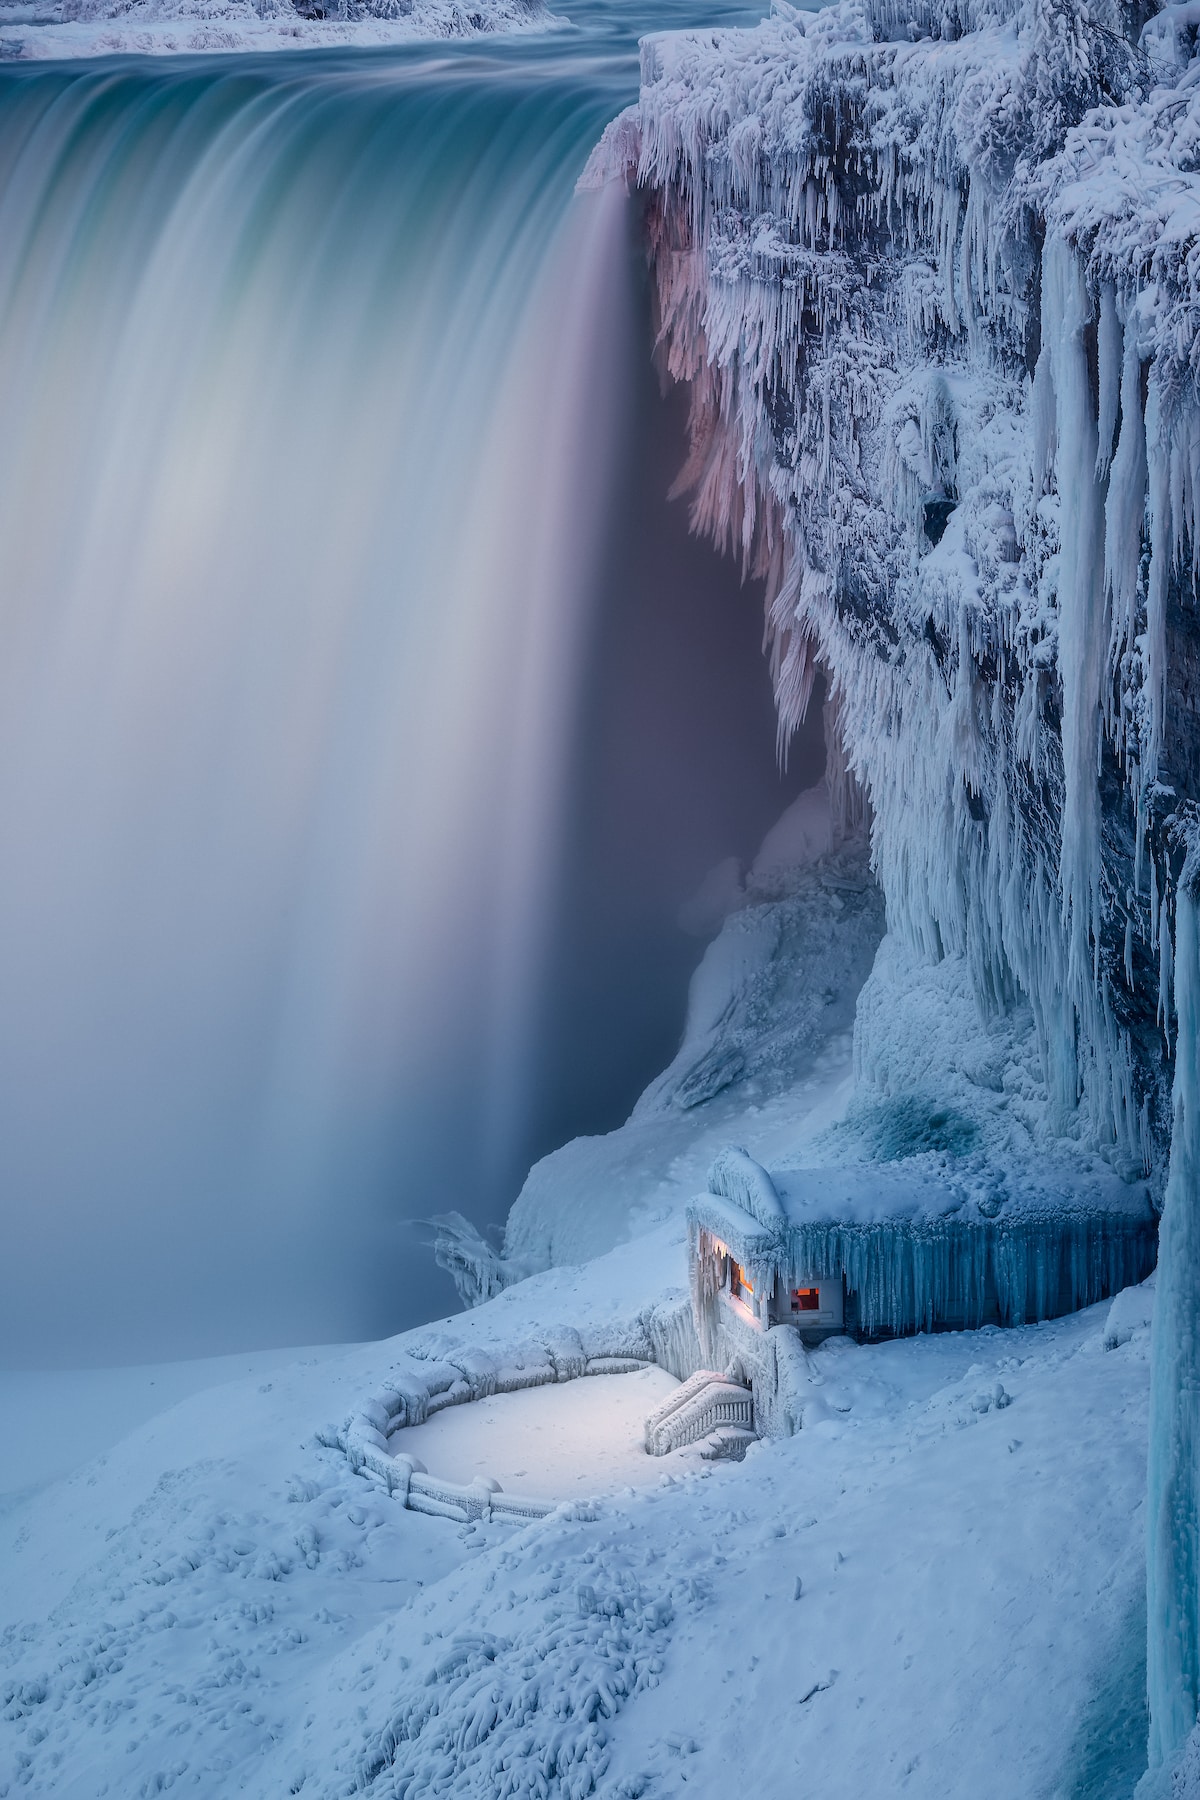 Niagara Falls Covered in Ice